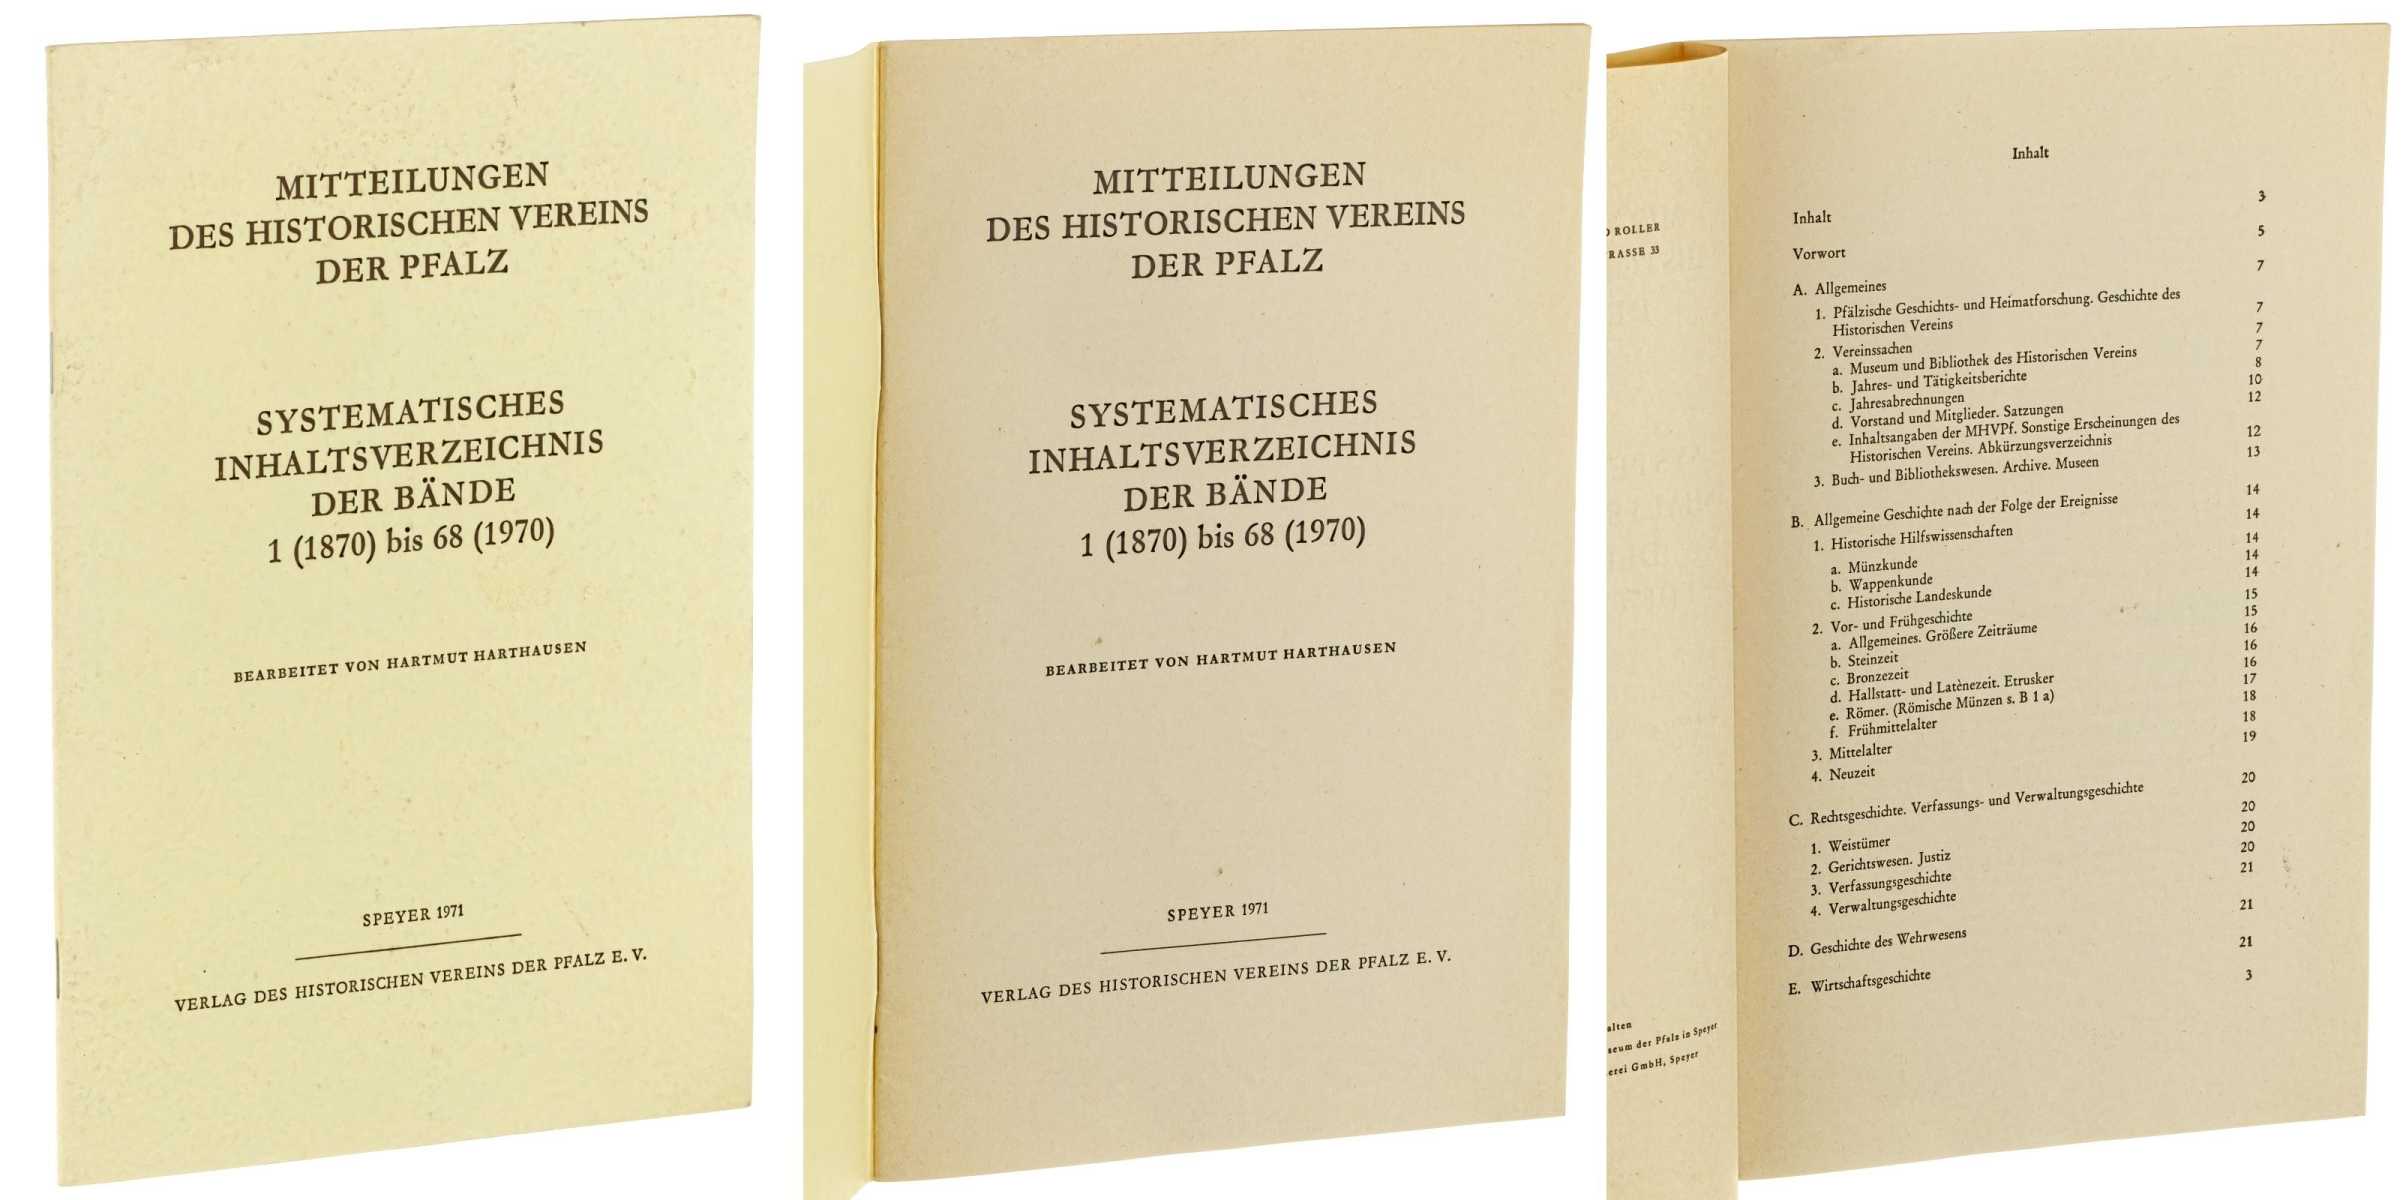   Mitteilungen des Historischen Vereins der Pfalz. Systematisches Inhaltsverzeichnis der Bände 1 (1870) bis 68 (1970). Bearb. von Hartmut Harthausen. 